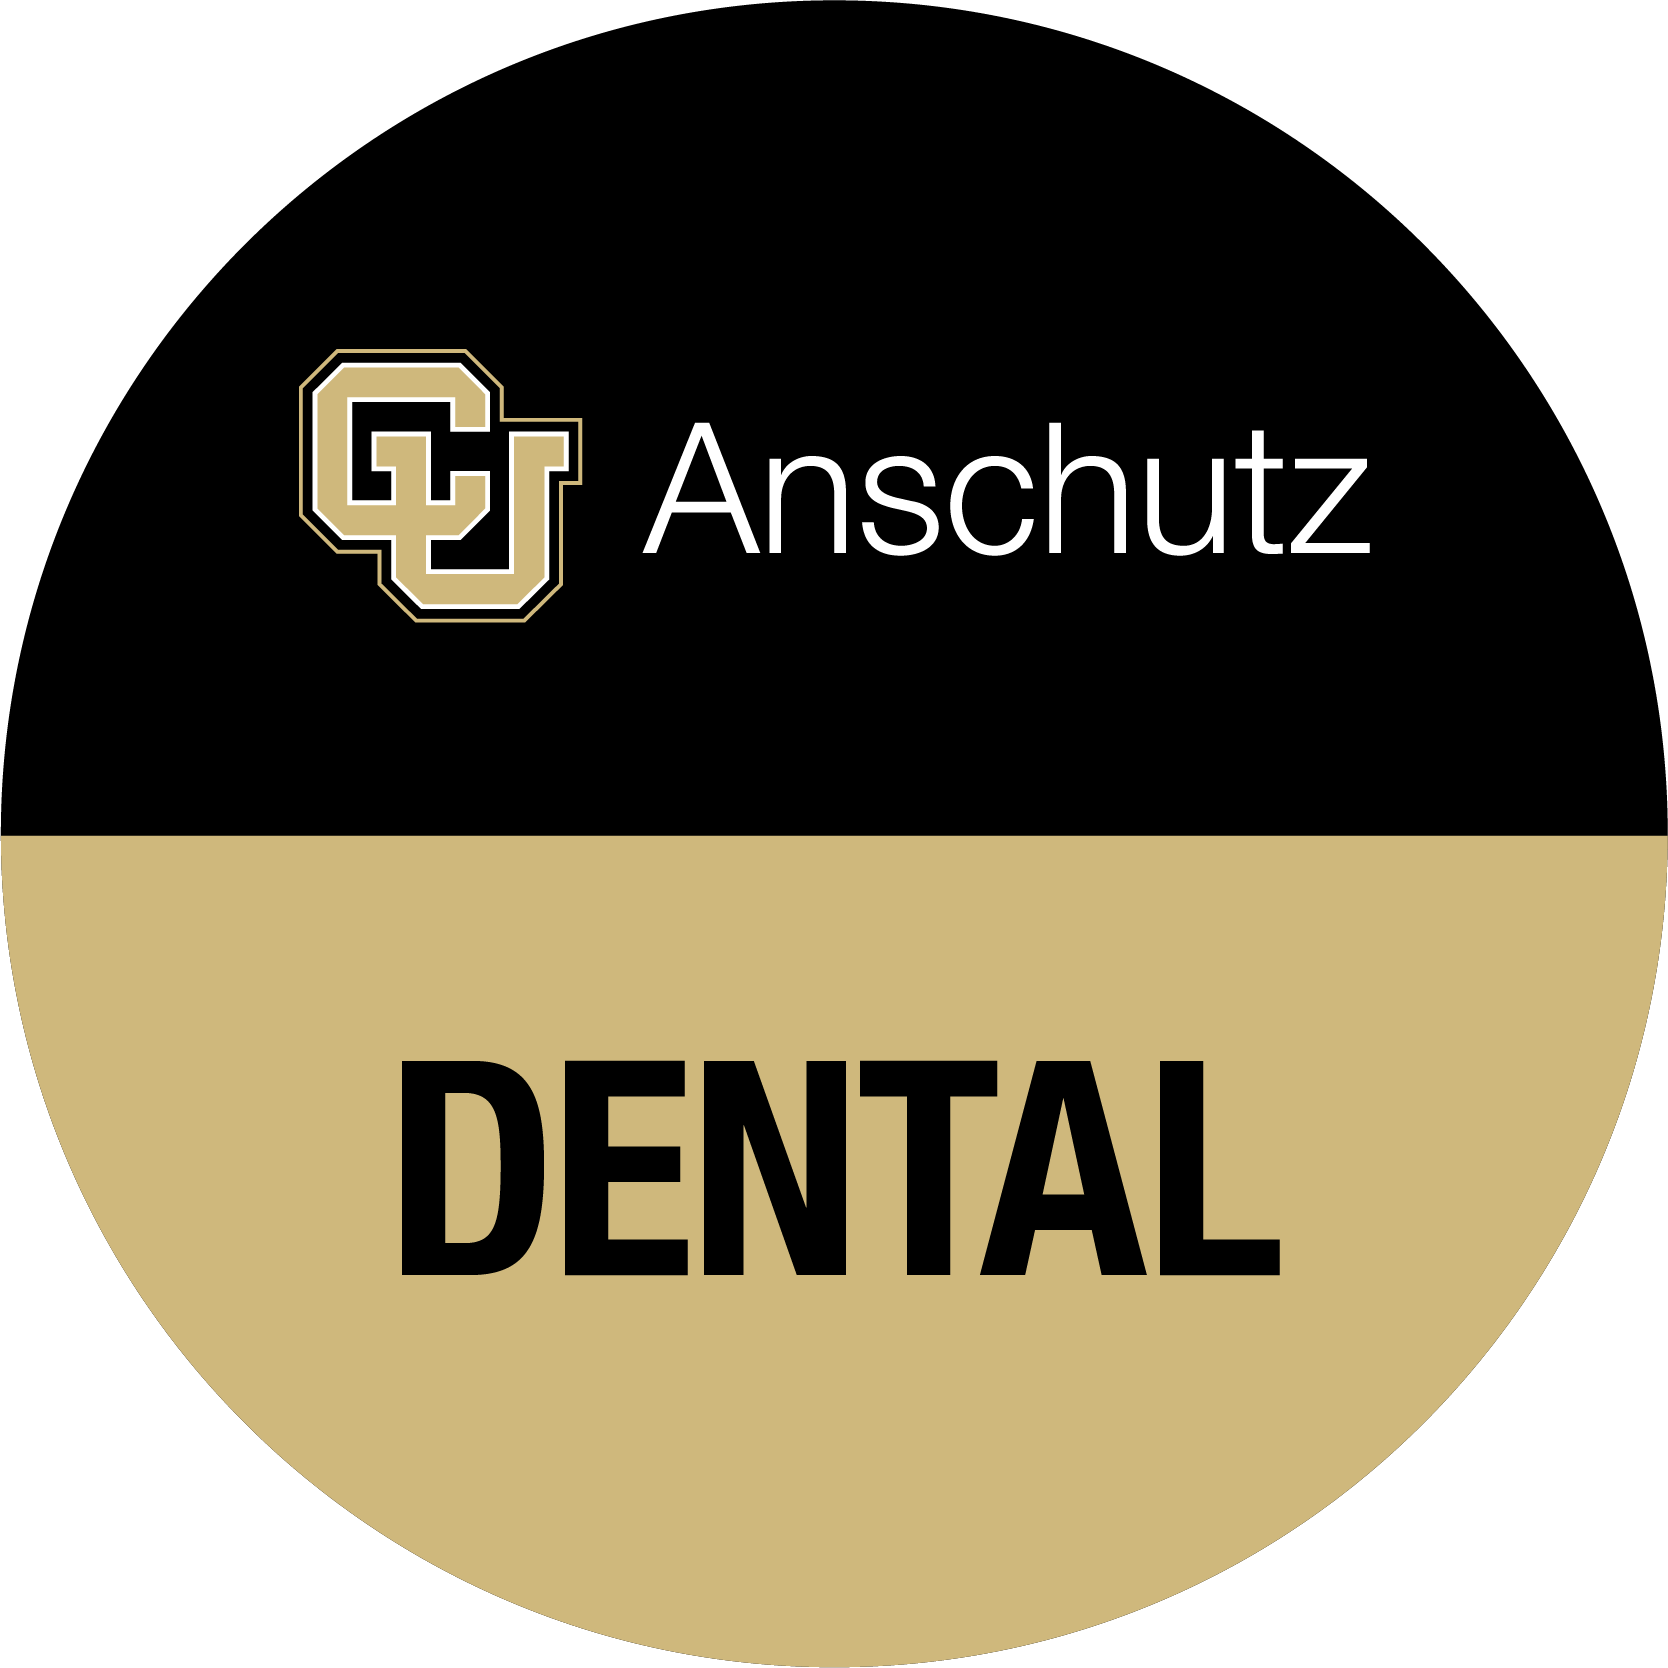 Company logo of University of Colorado School of Dental Medicine